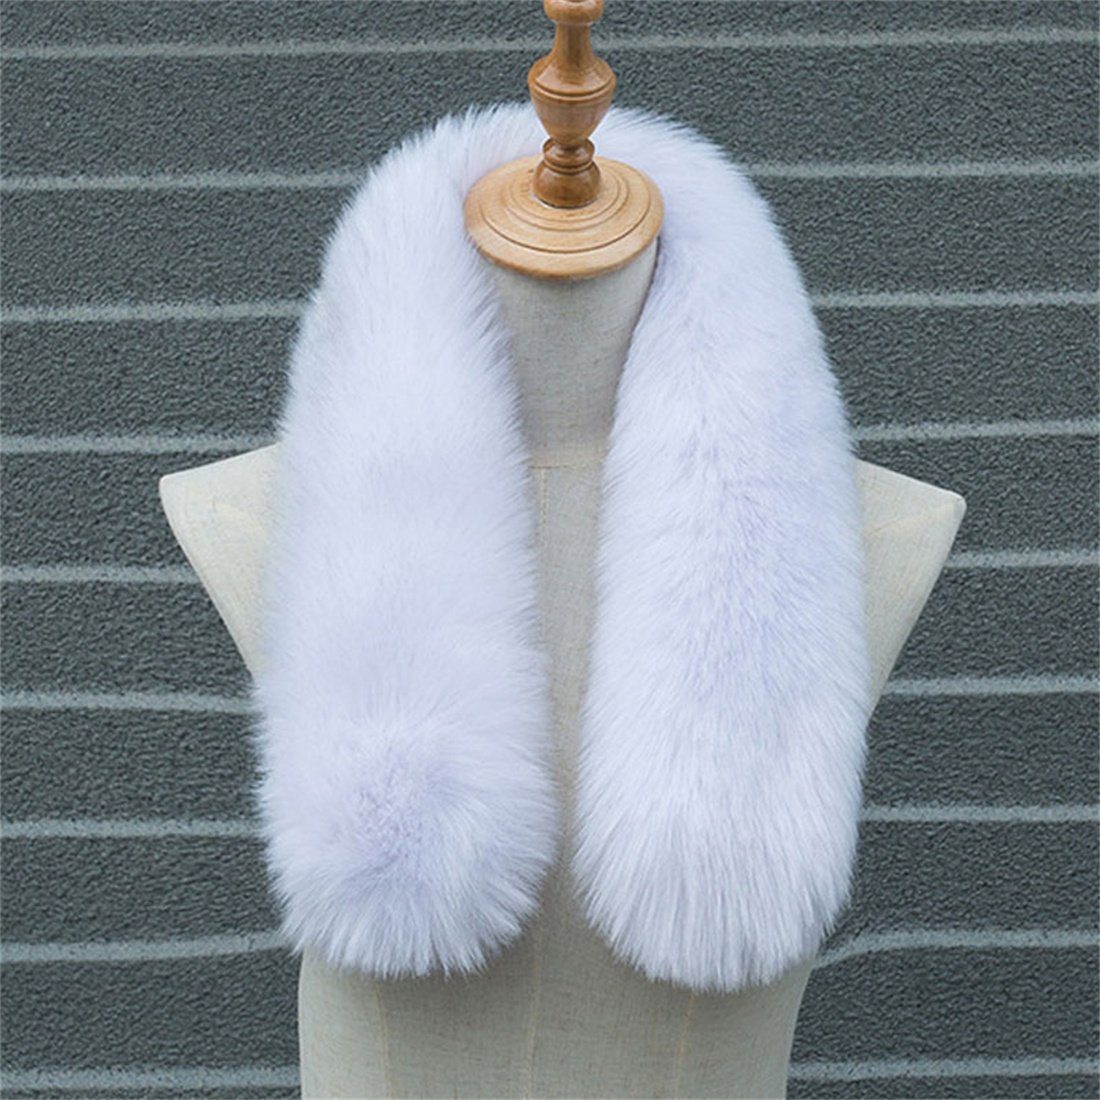 DÖRÖY Modeschal Damen Winter warm verdickt Plüsch Schal,Nachahmung Pelz einfarbigSchal weiß | Modeschals